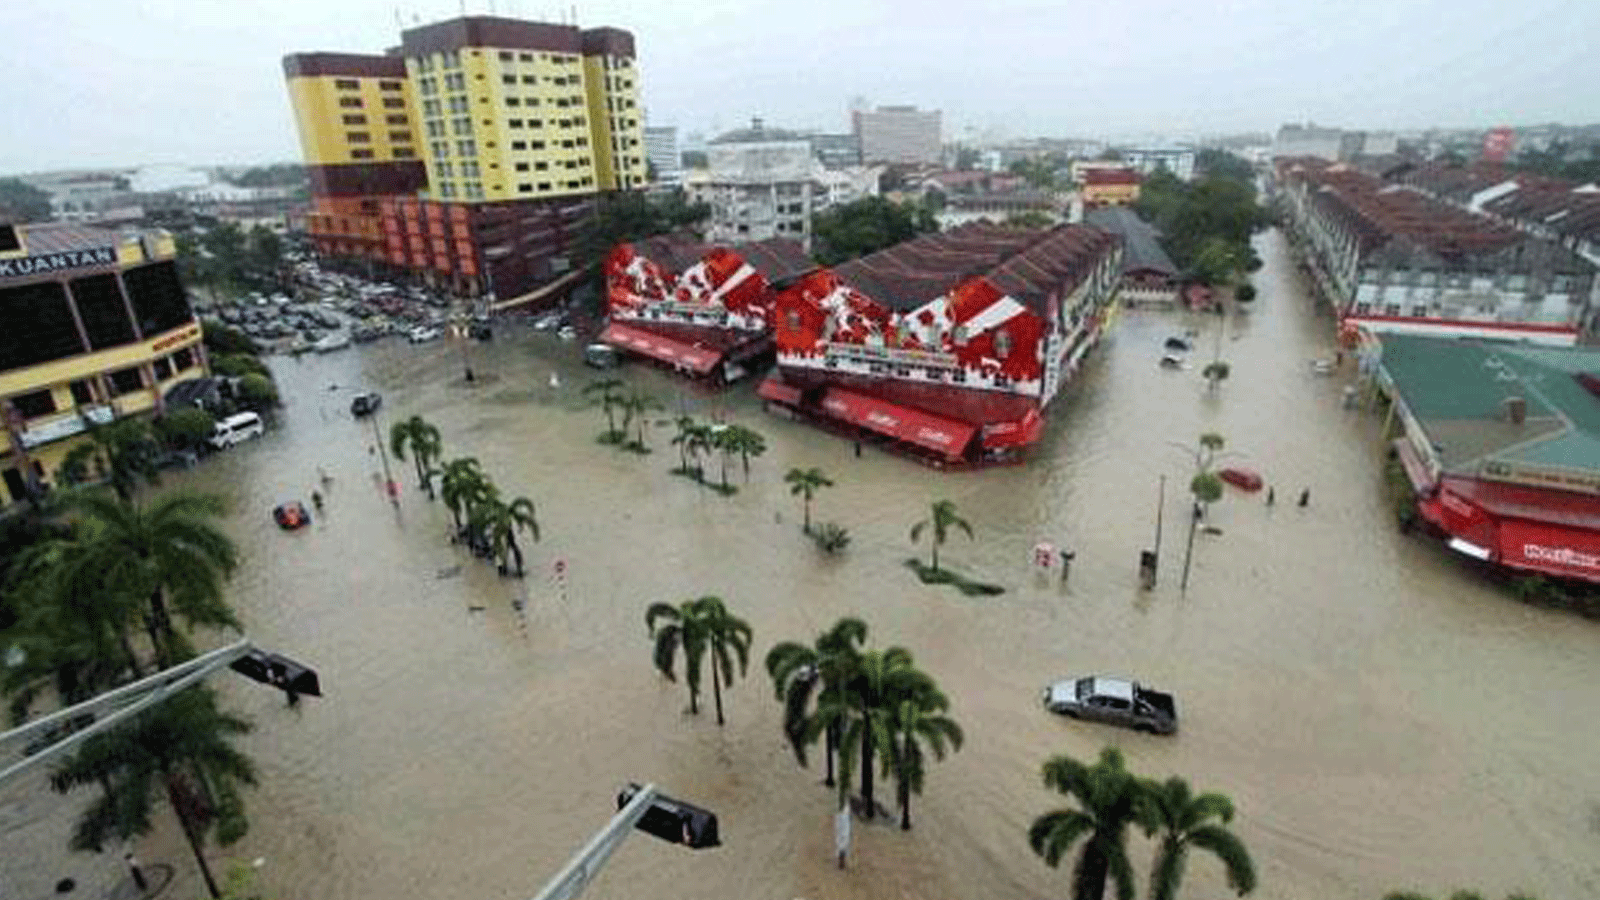 الفيضانات في شوارع بلدة كوانتان الشمالية الشرقية في ماليزيا